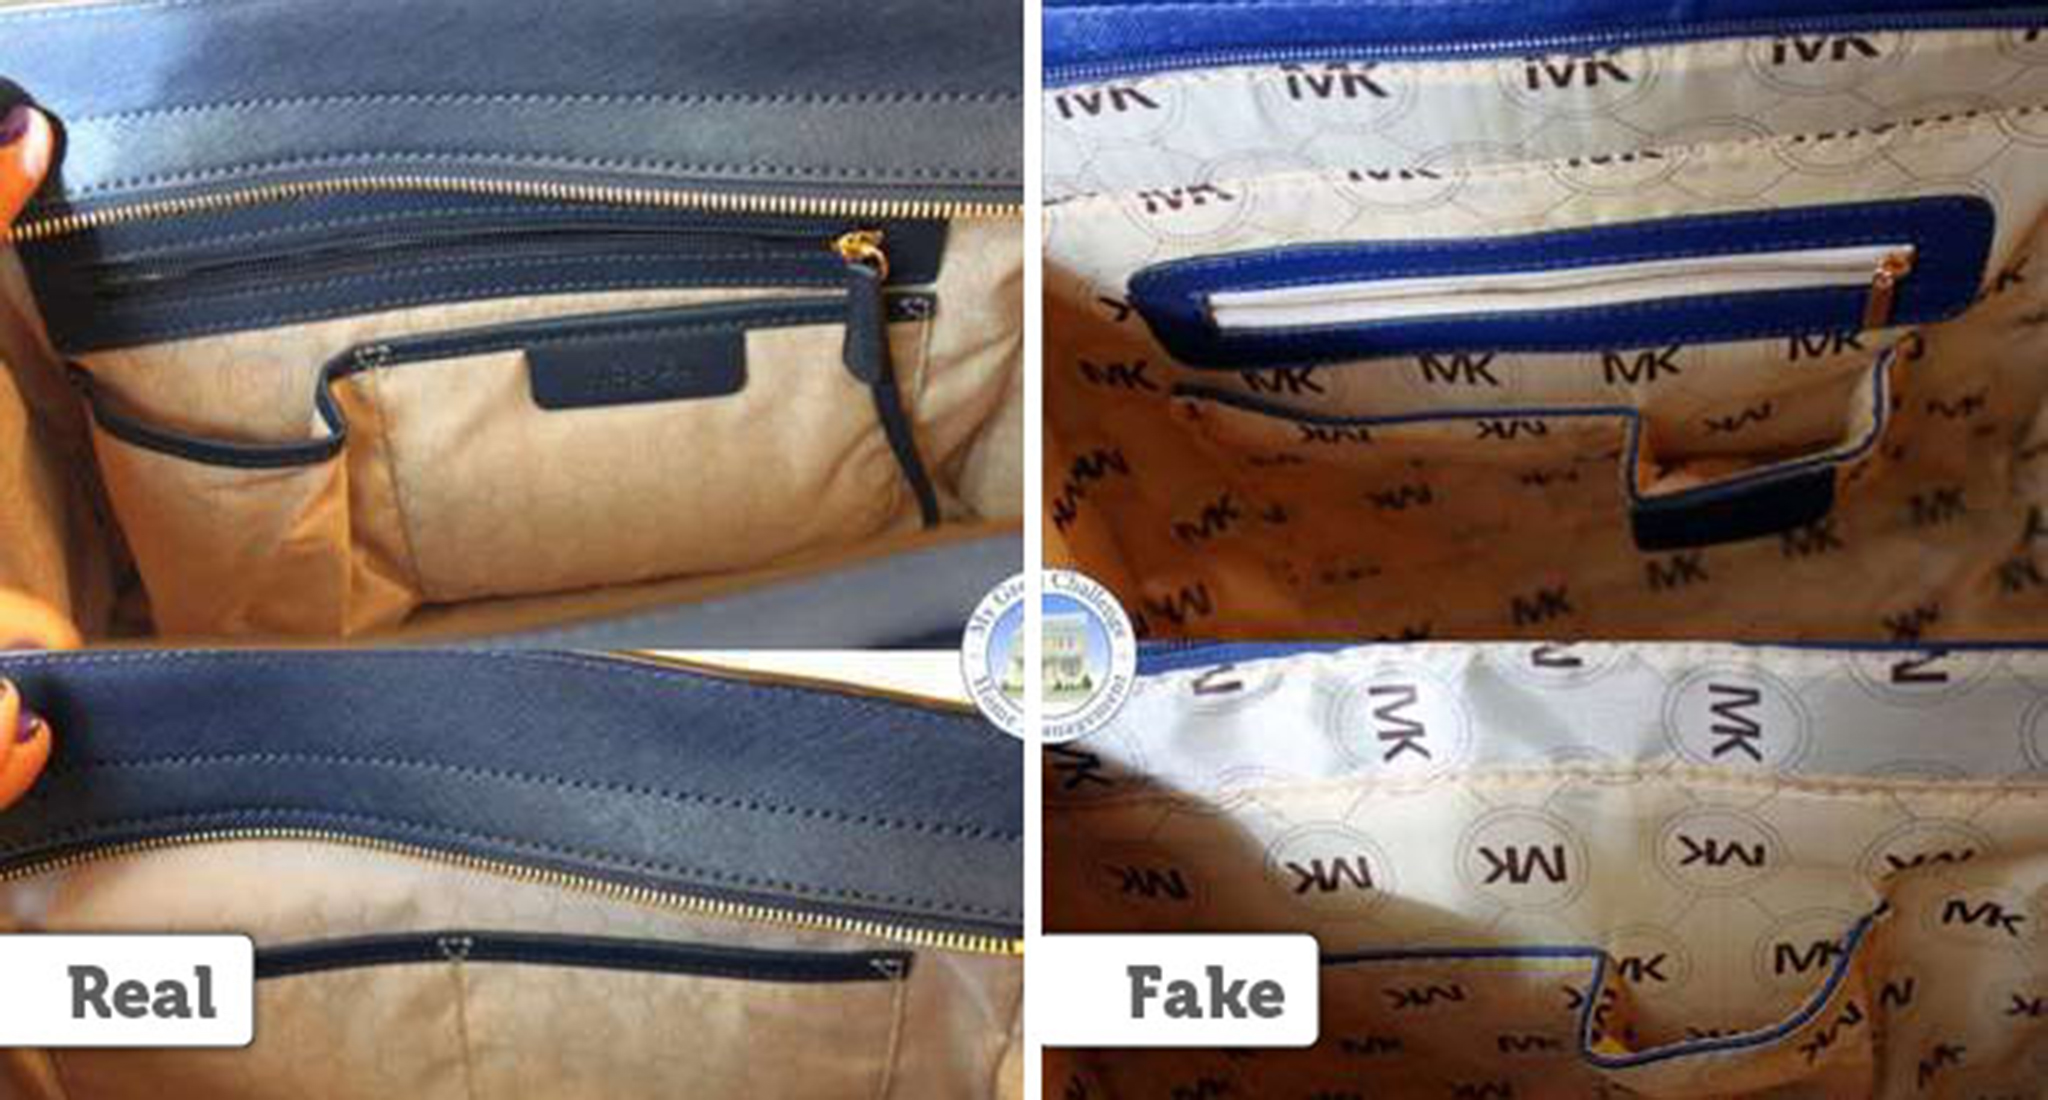 original mk bag vs fake